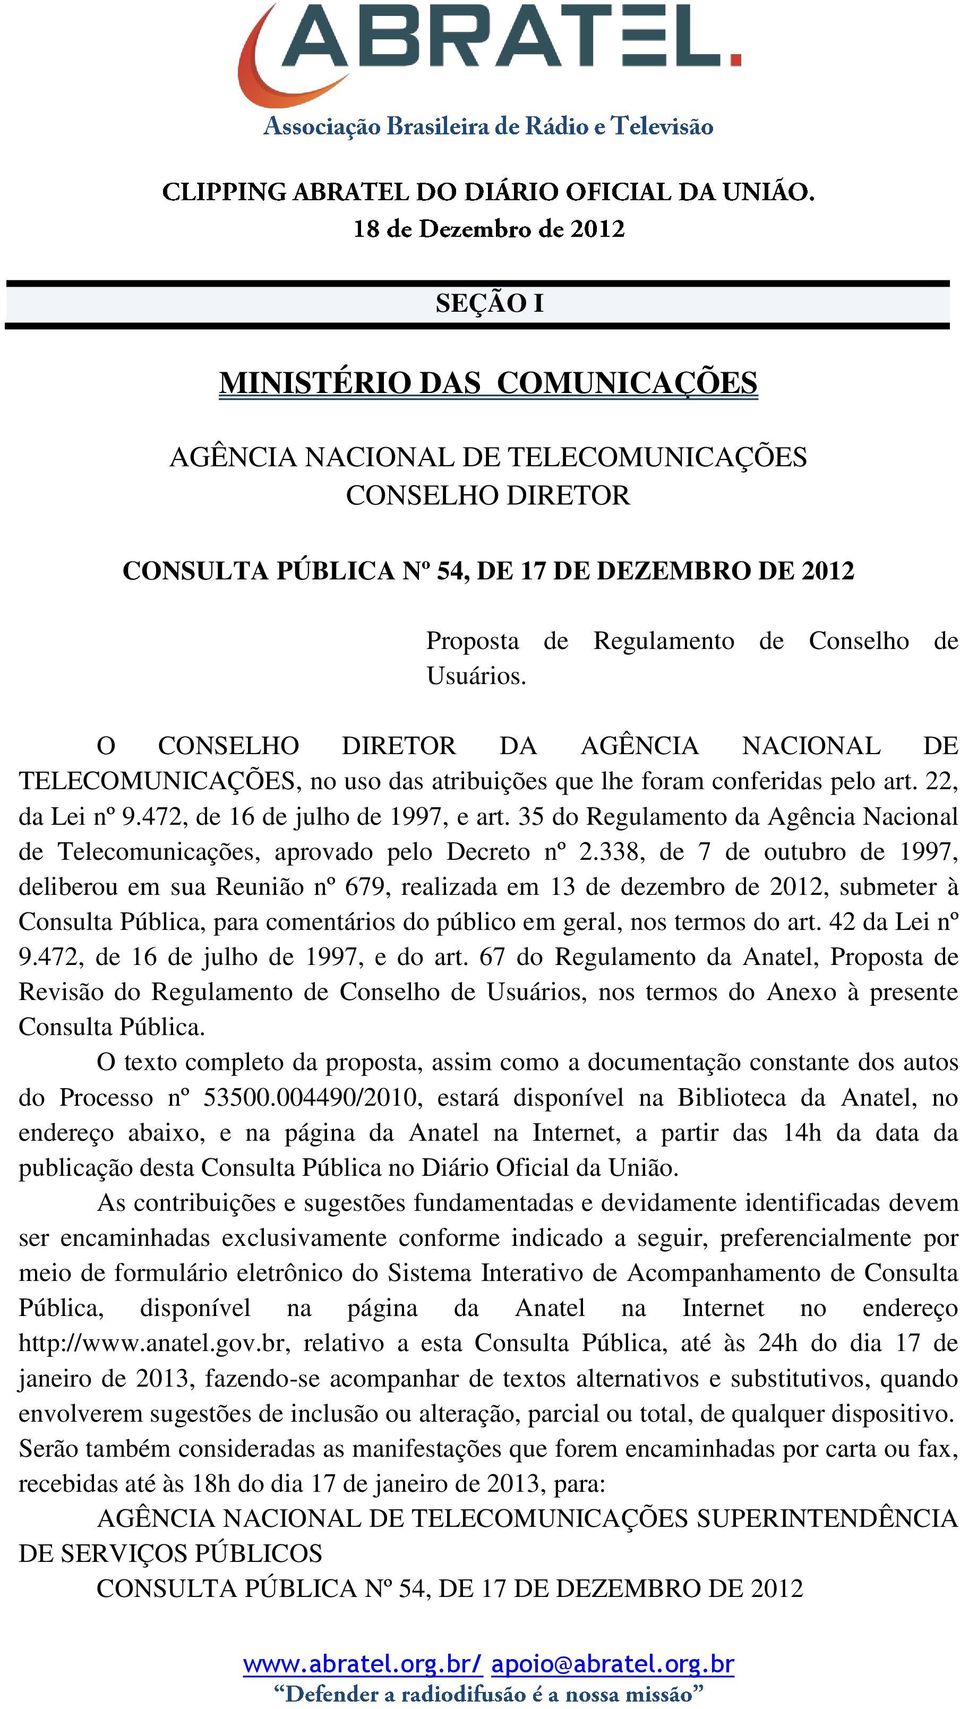 35 do Regulamento da Agência Nacional de Telecomunicações, aprovado pelo Decreto nº 2.